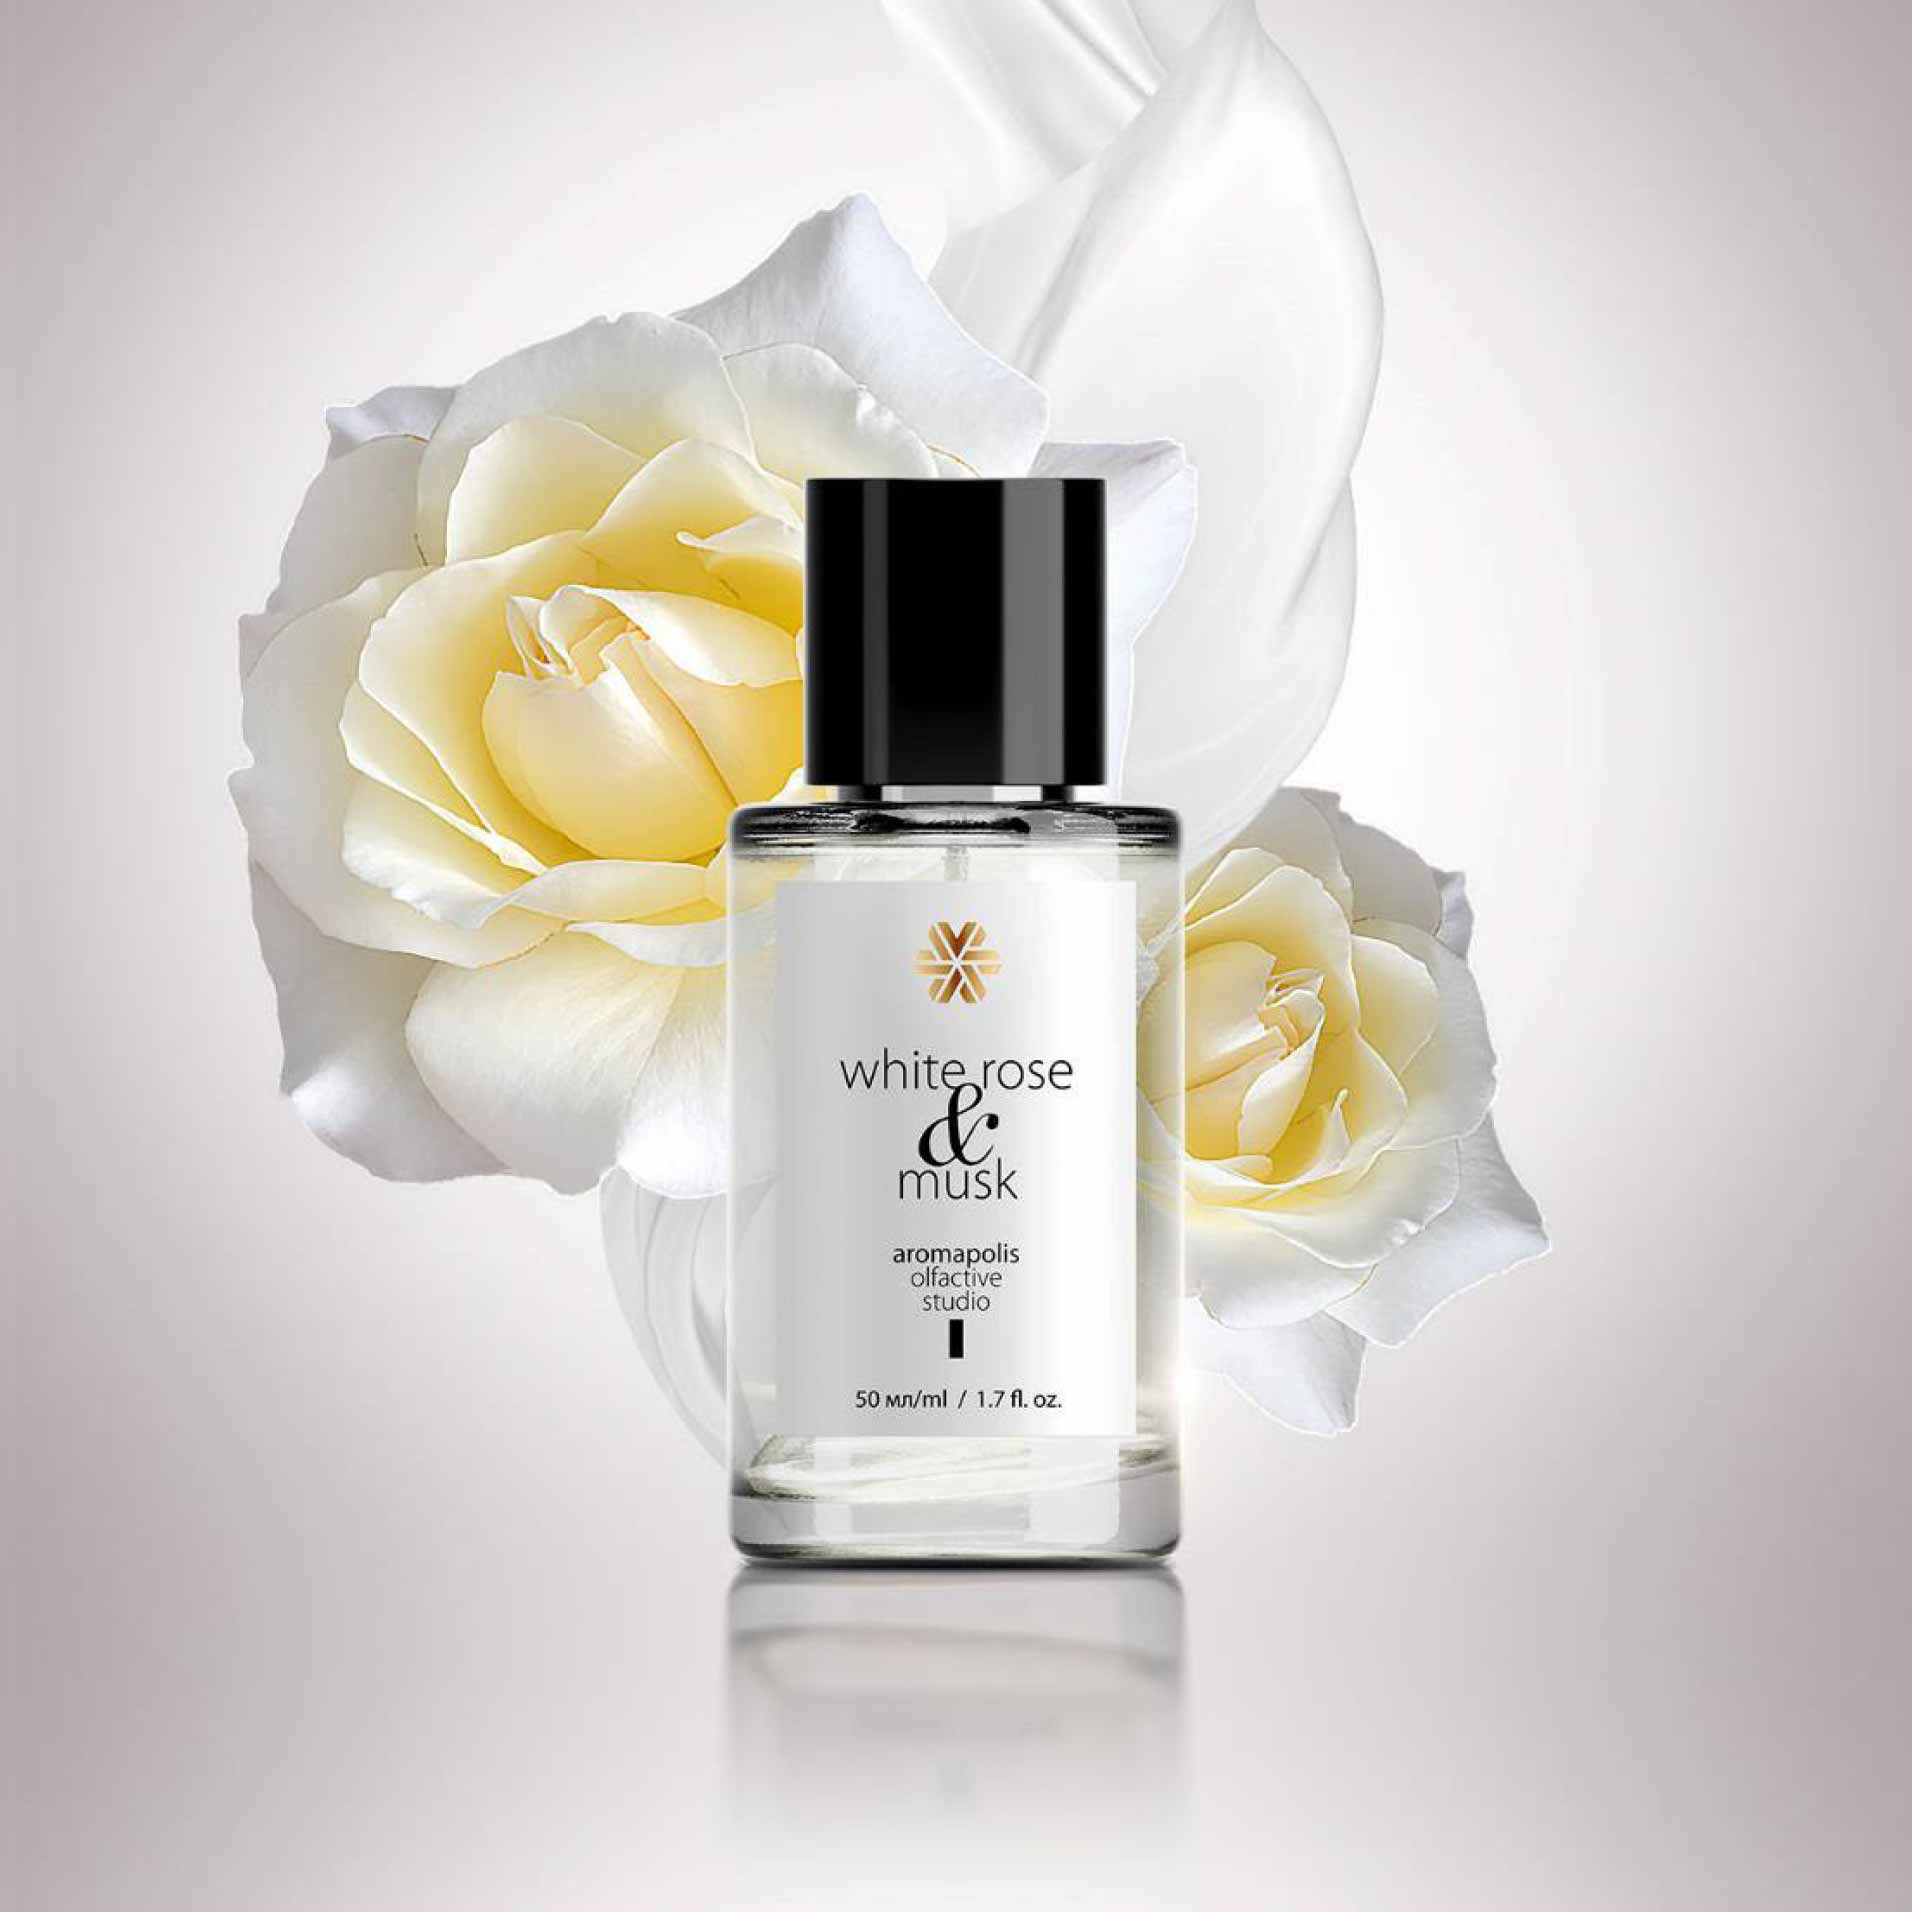 Изображение отсутствует.
			Купить White Rose & Musk, парфюмерная вода, 50 мл - Aromapolis Olfactive Studio //  // 